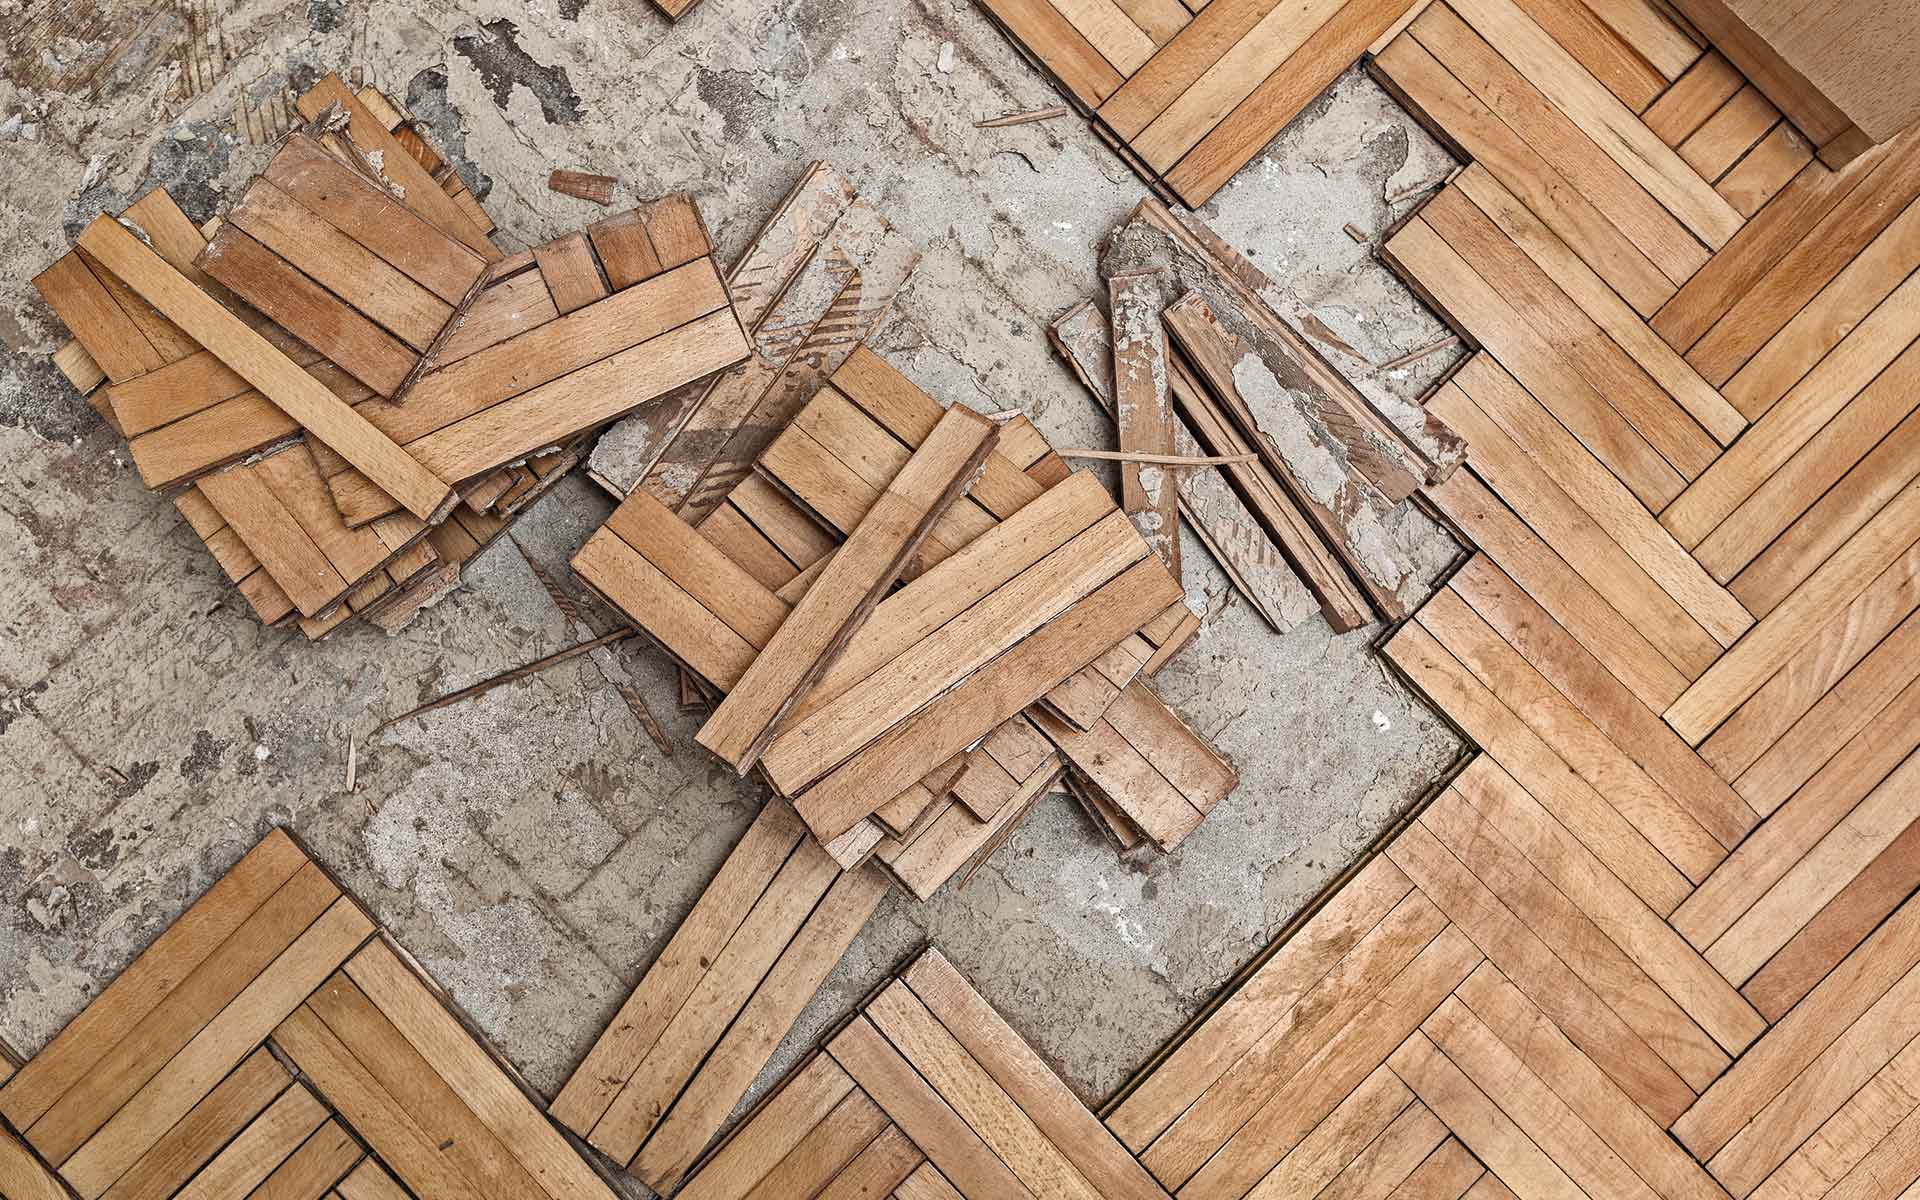 Hardwood Flooring Contractors, Hardwood Floor Repair Charleston Sc